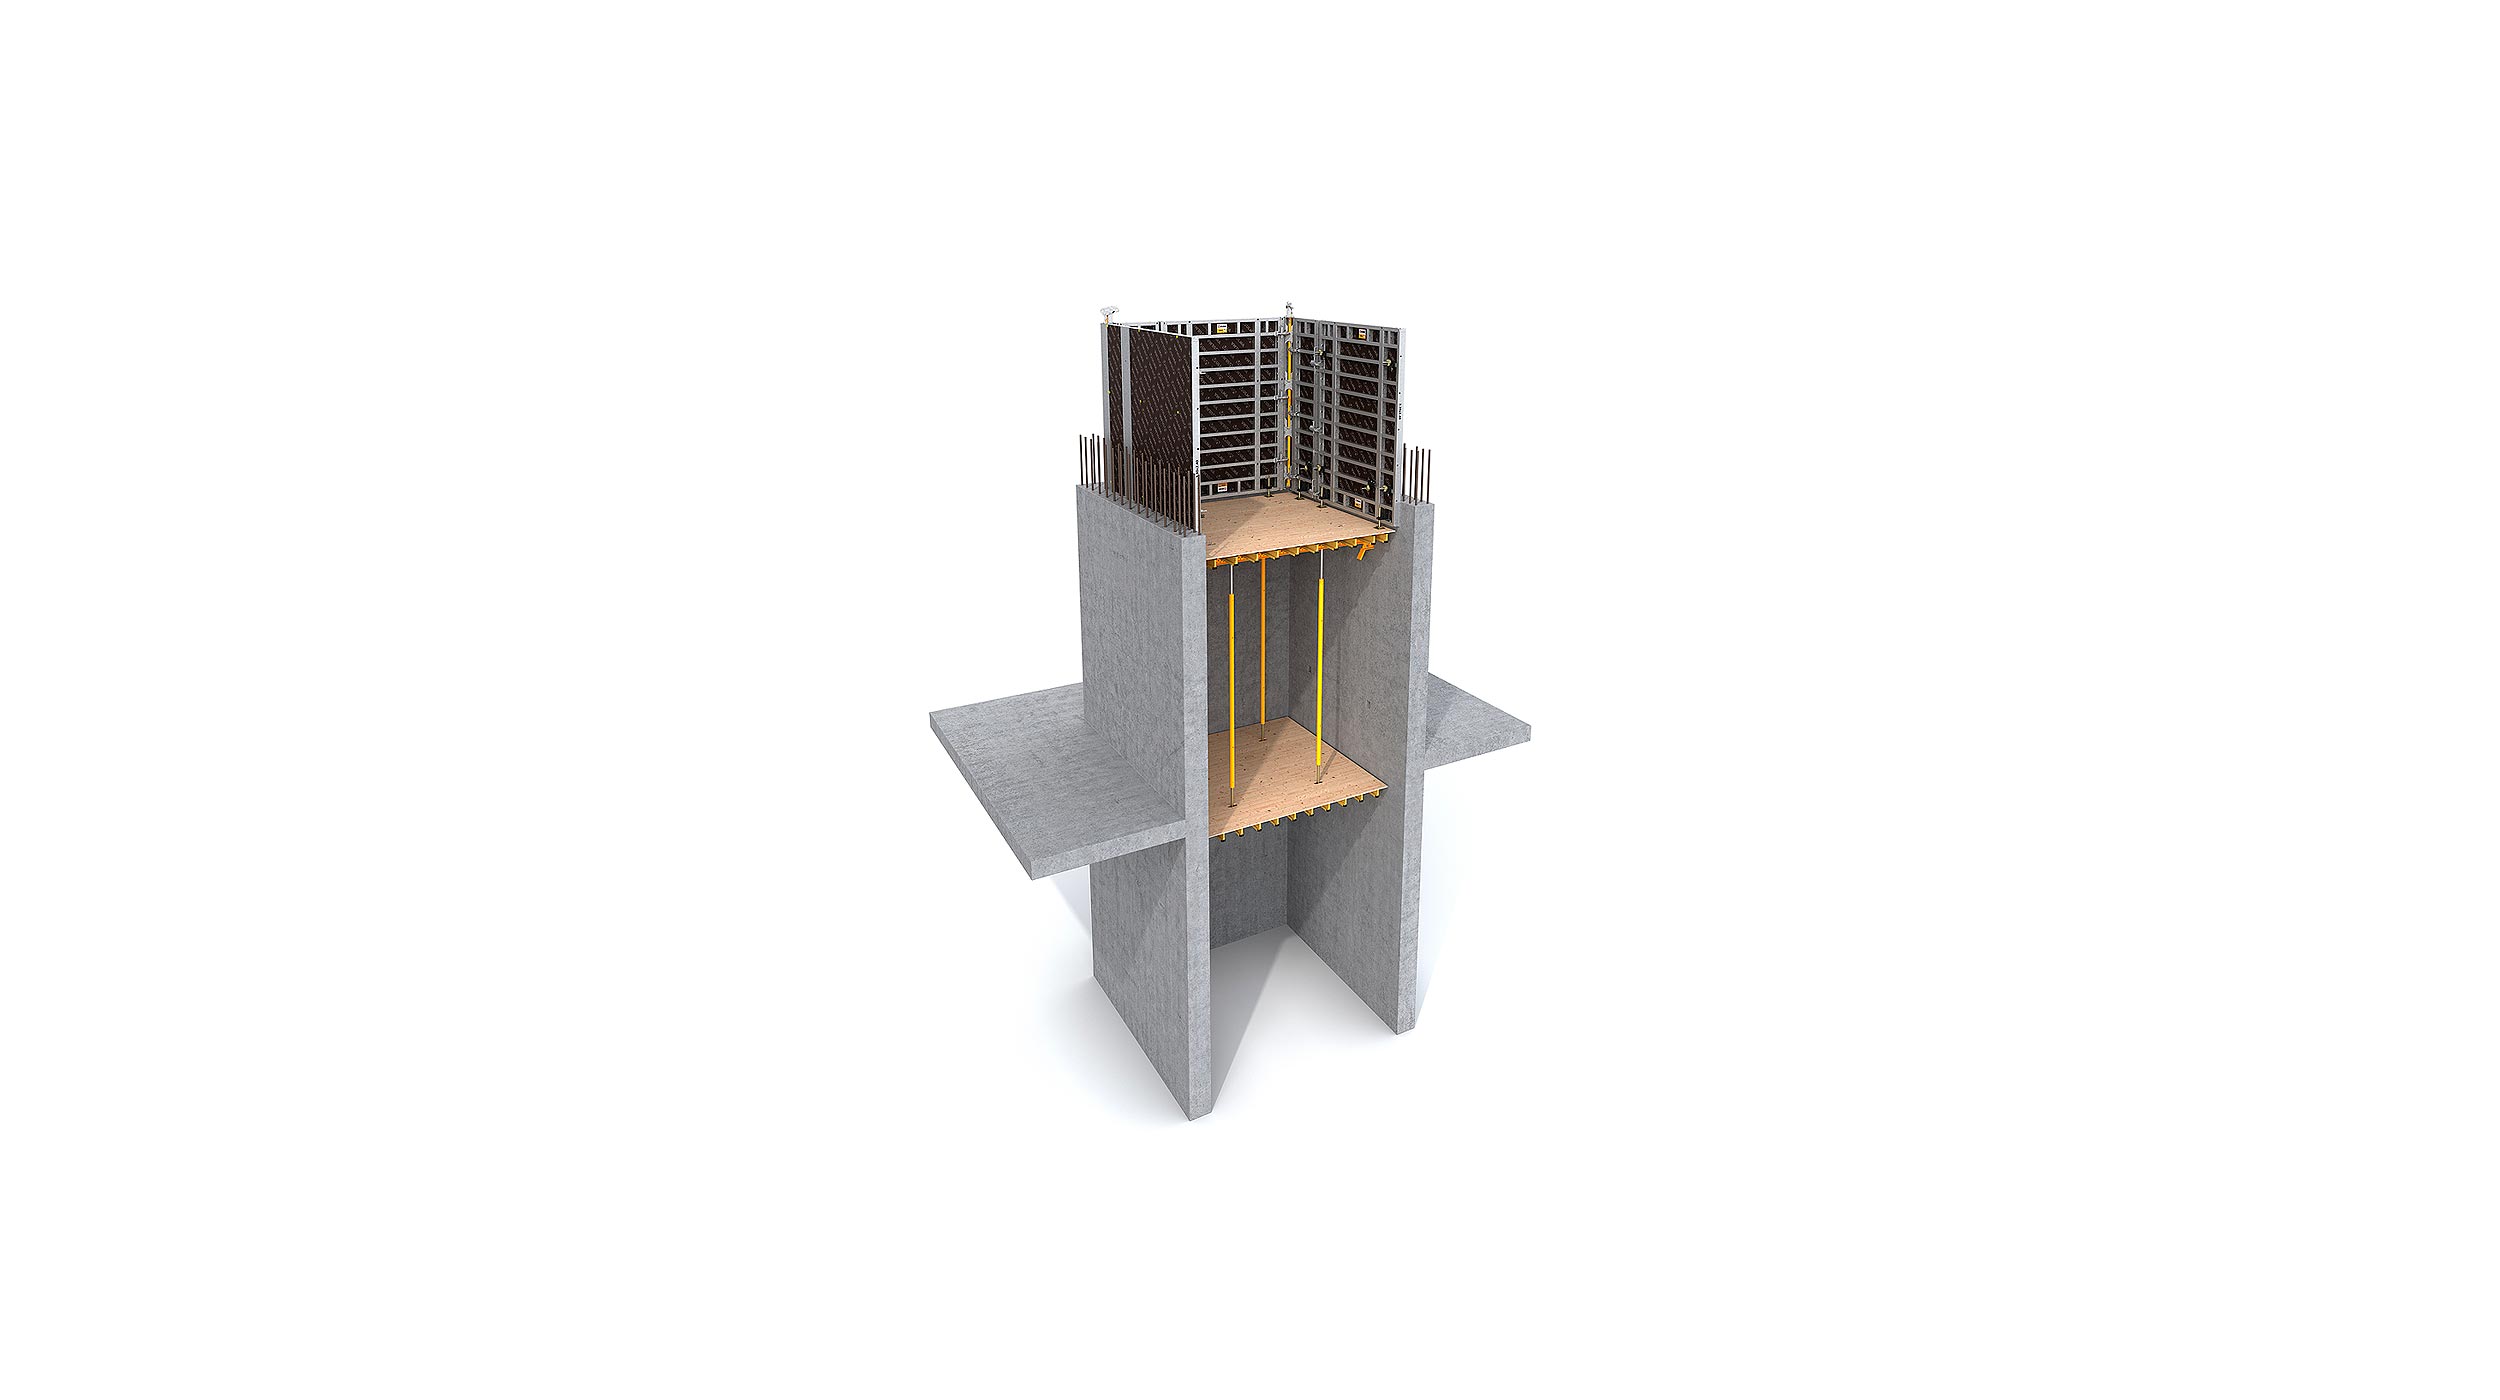 Una solución sencilla para el soporte de encofrado en huecos interiores. Indicada para huecos de ascensor y escaleras, columnas huecas etc.